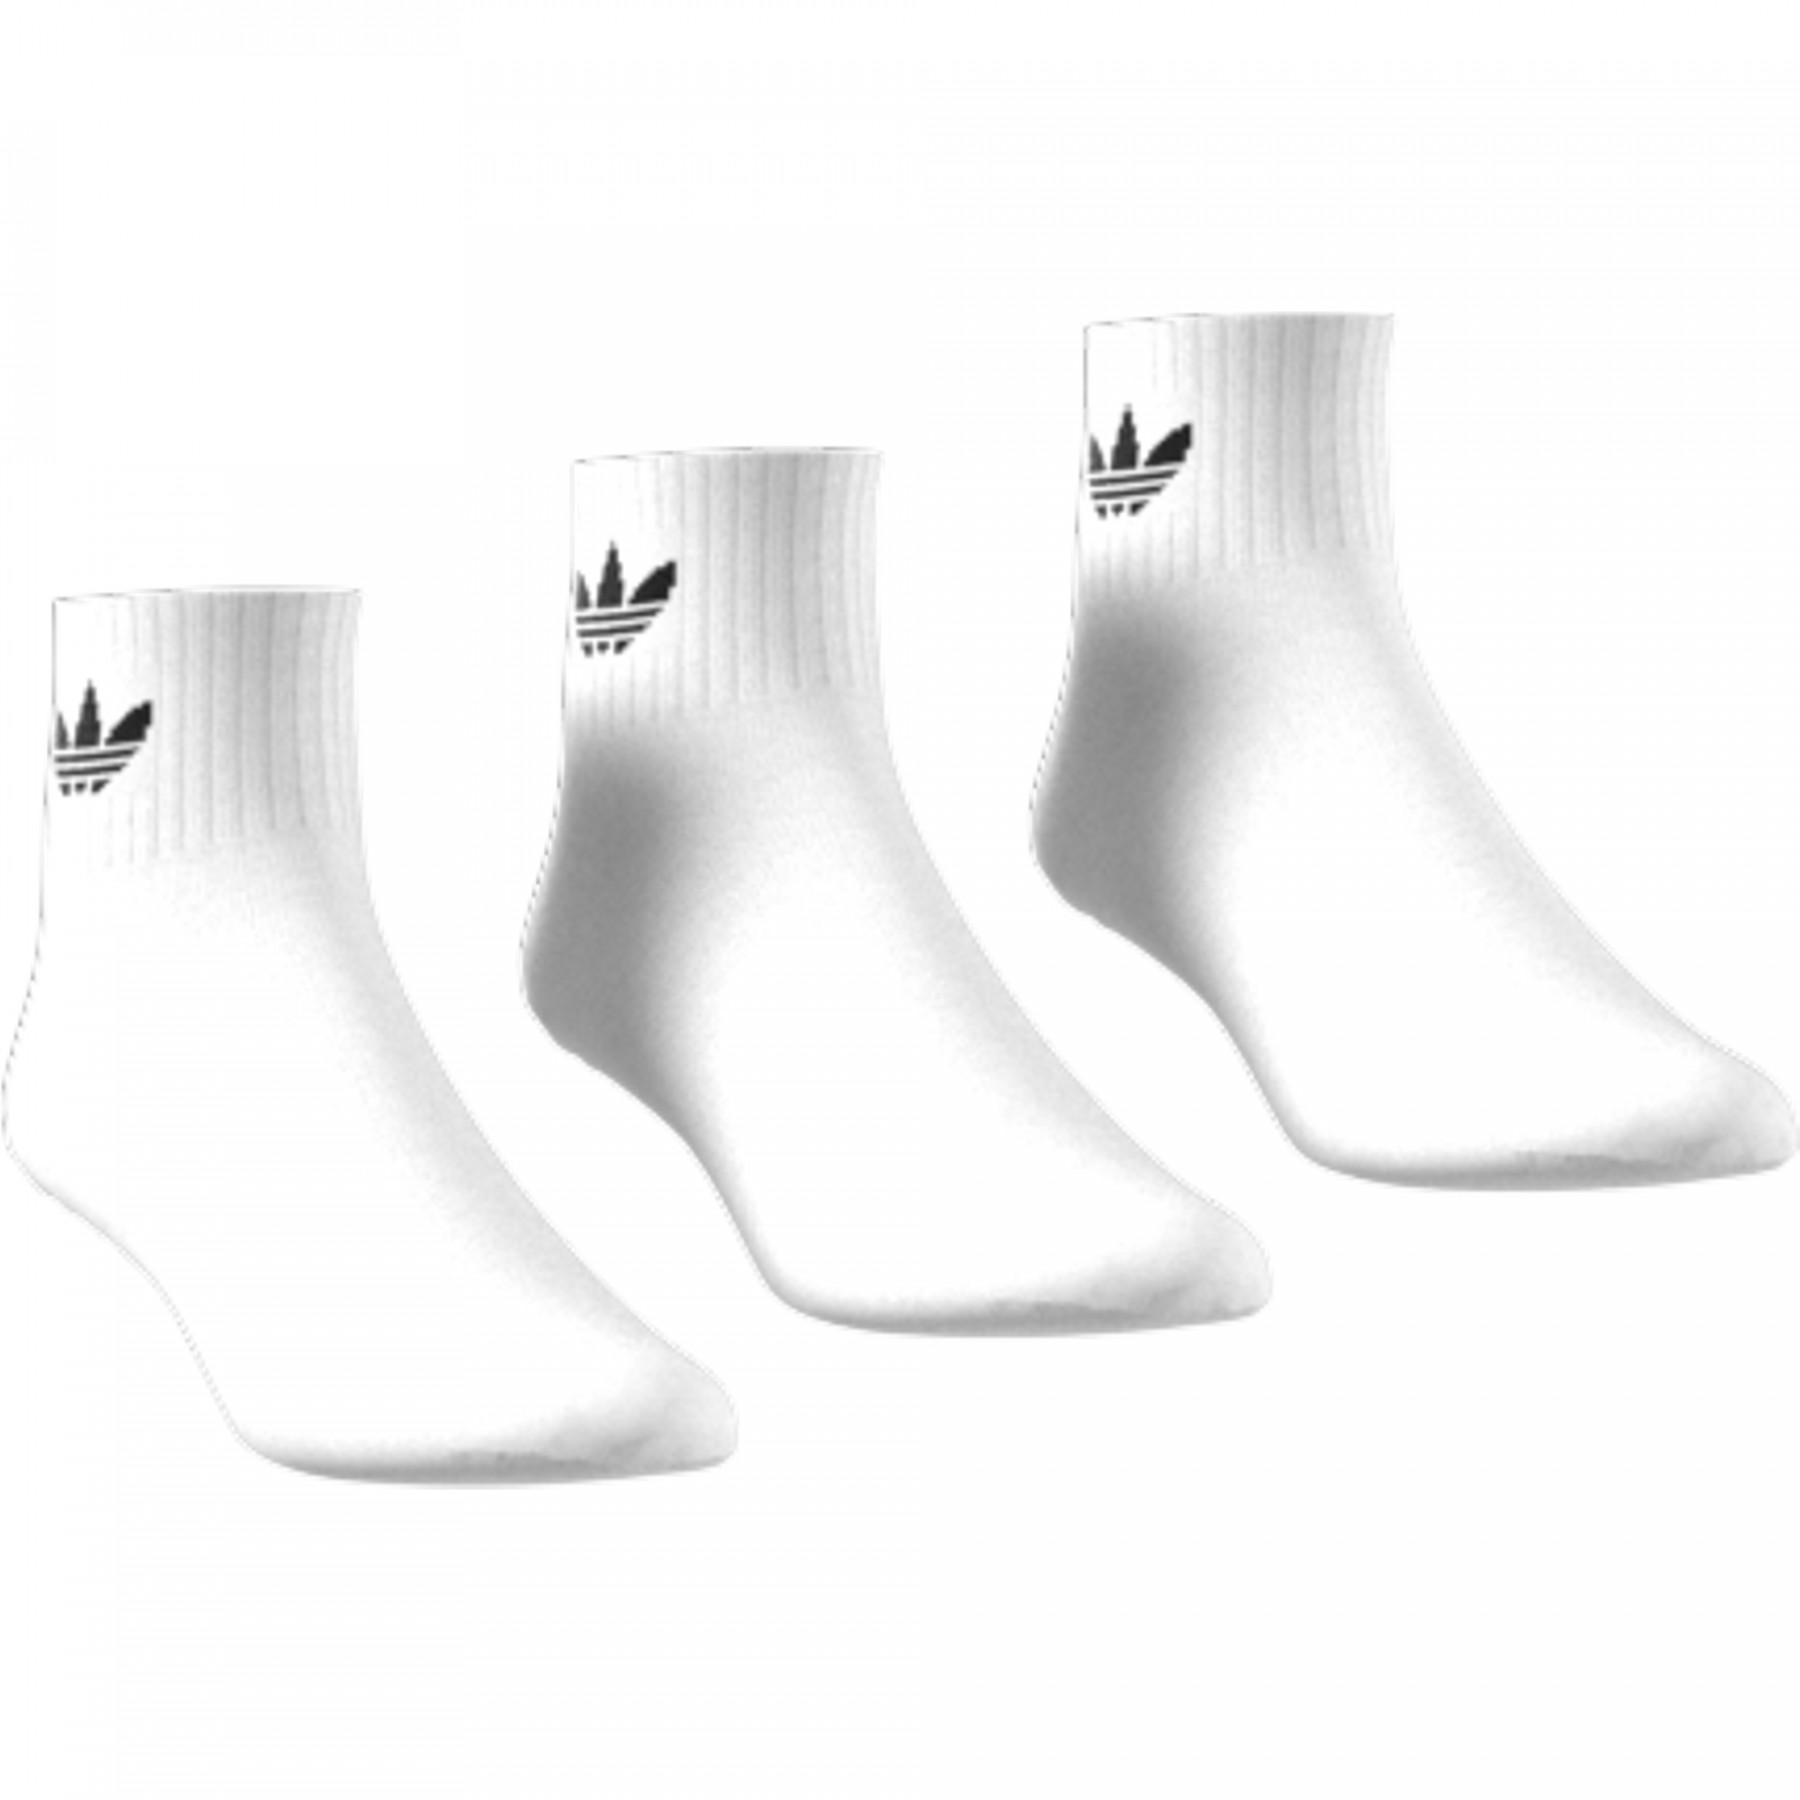 Socks adidas originals (3 paires)